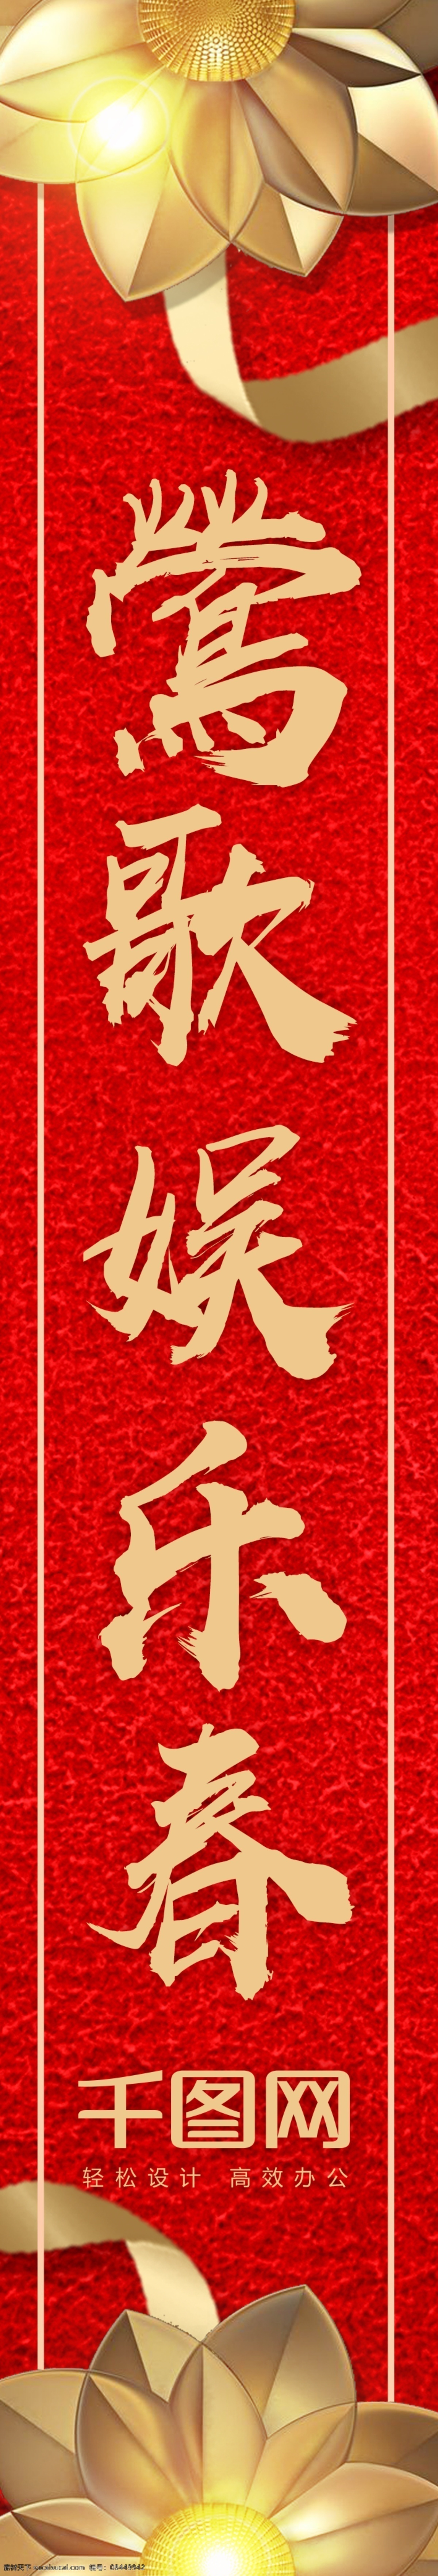 2018 新春 中国 风 喜庆 对联 中国风 手写字体 黄色花 丝带 2018新春 对联设计